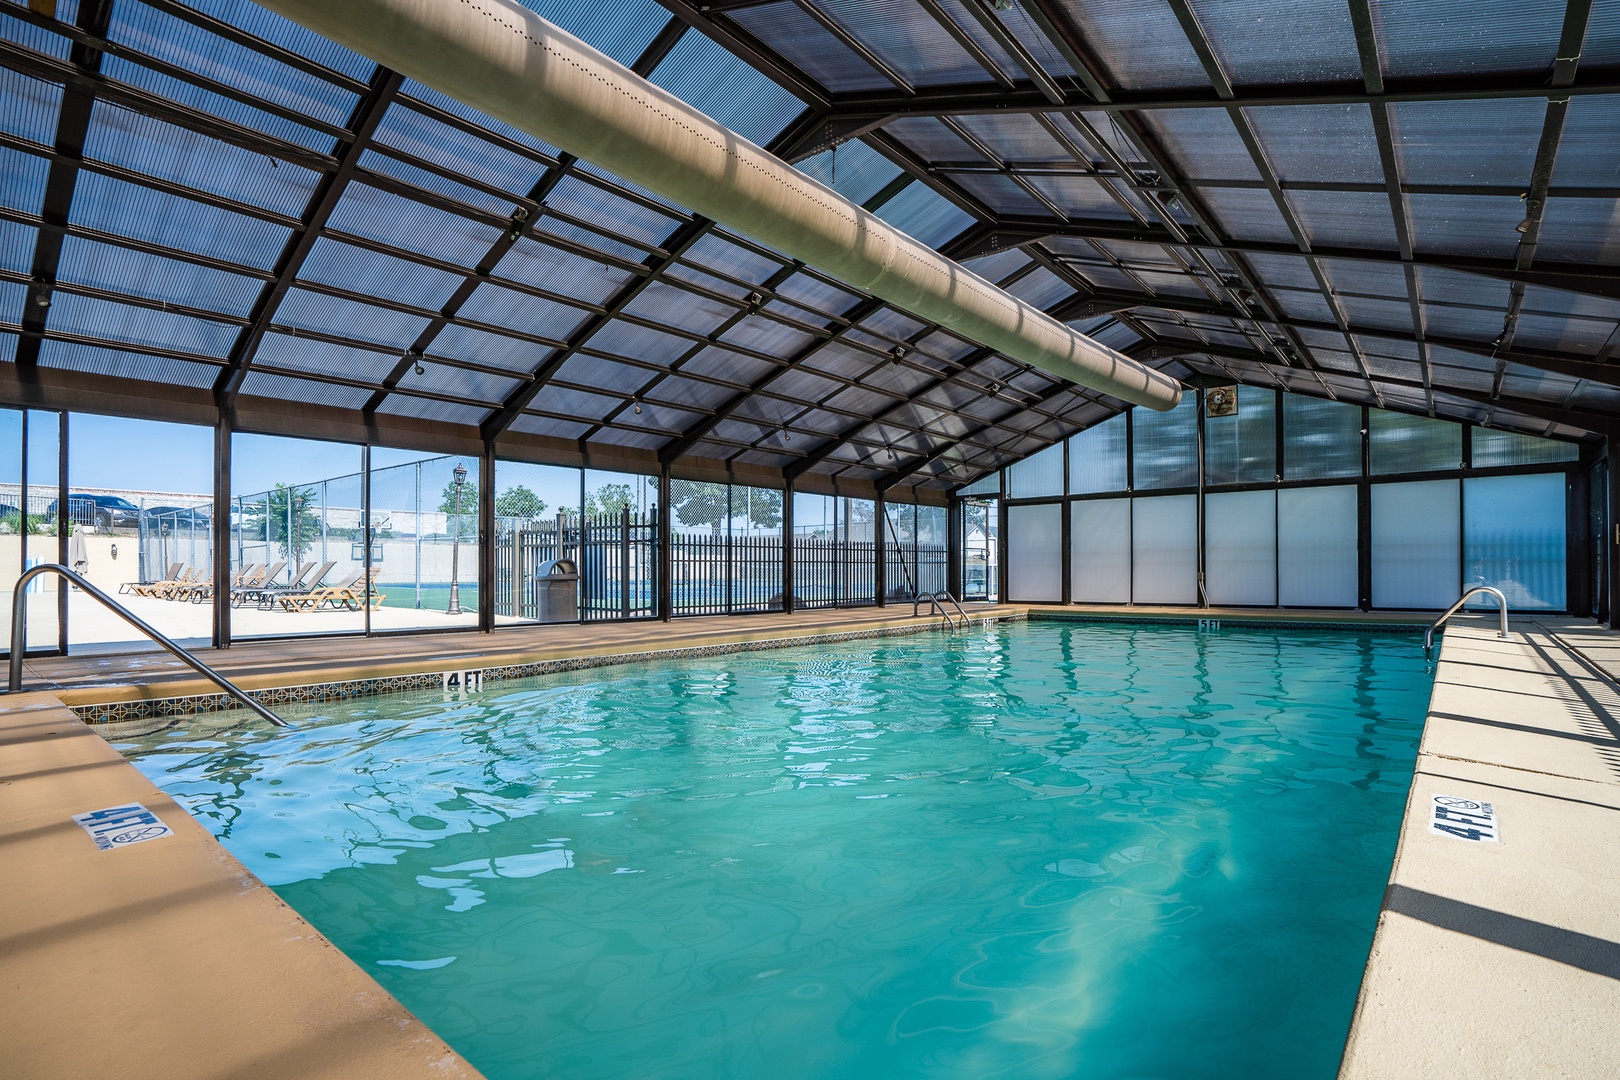 Pointe Royale communal indoor pool